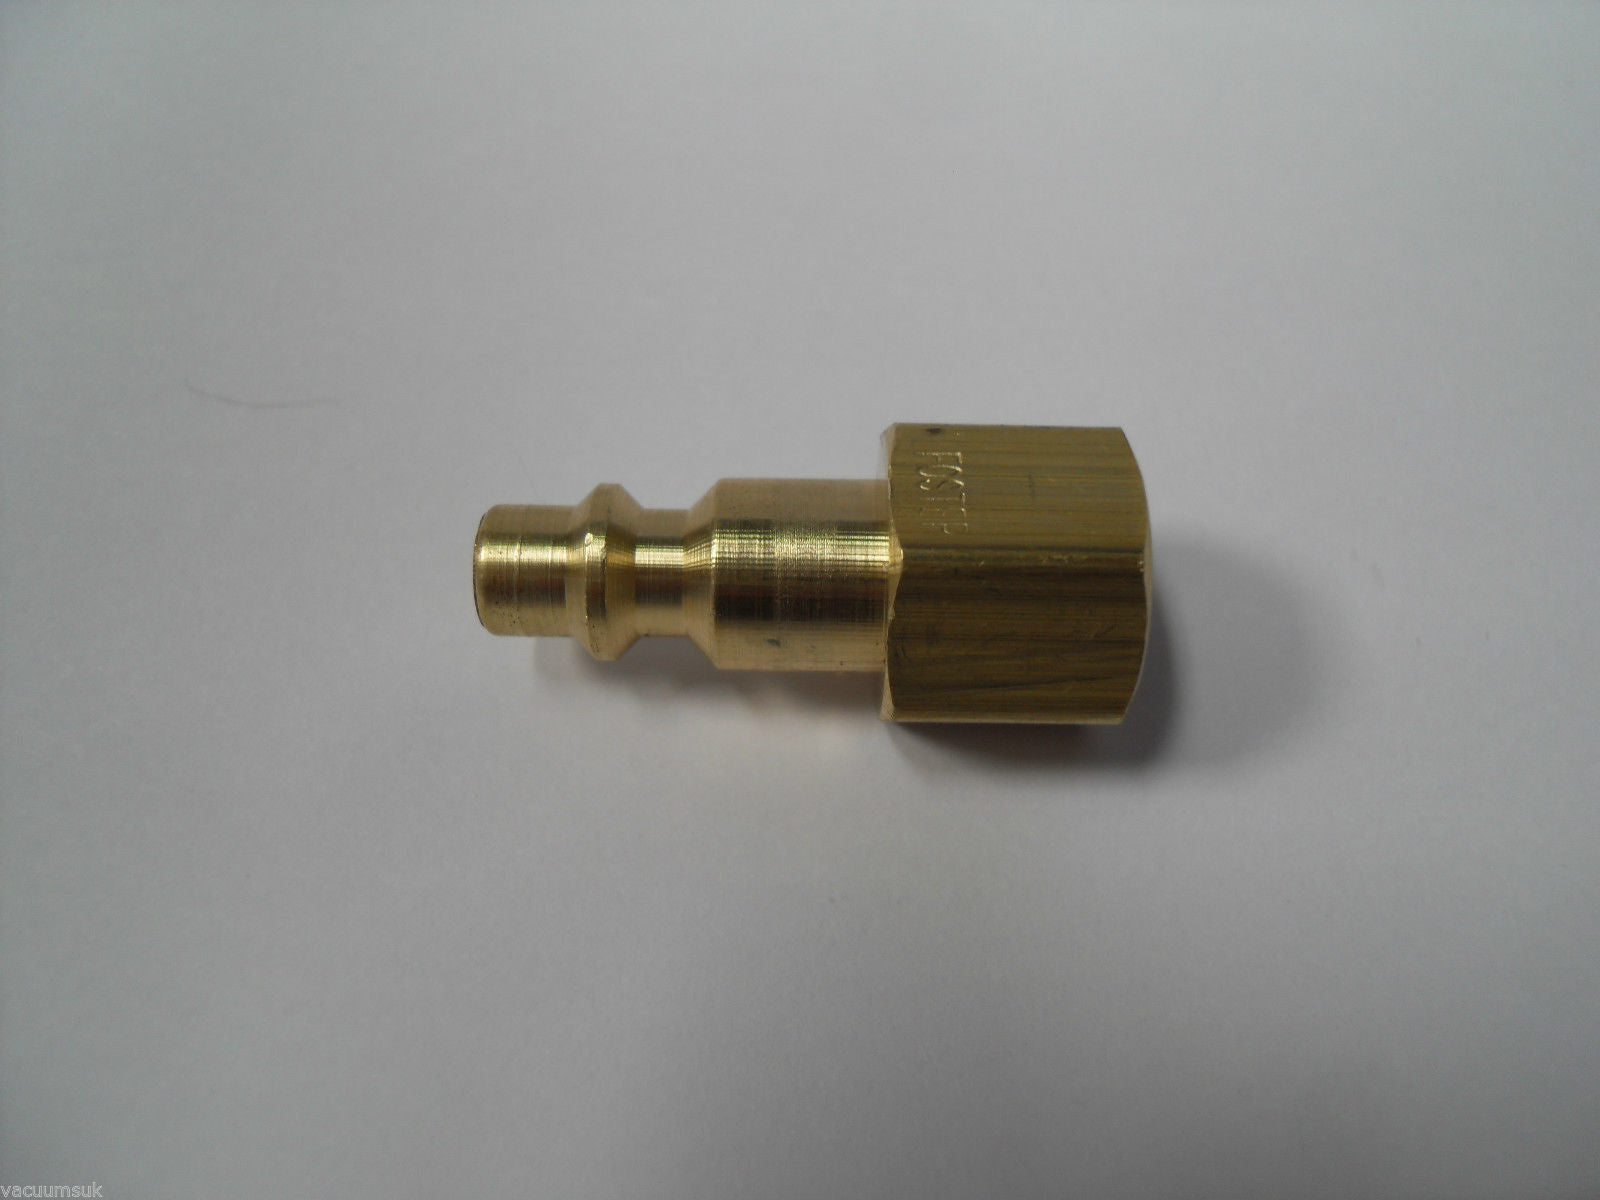 Prochem Male Plug Brass Connector GU4014